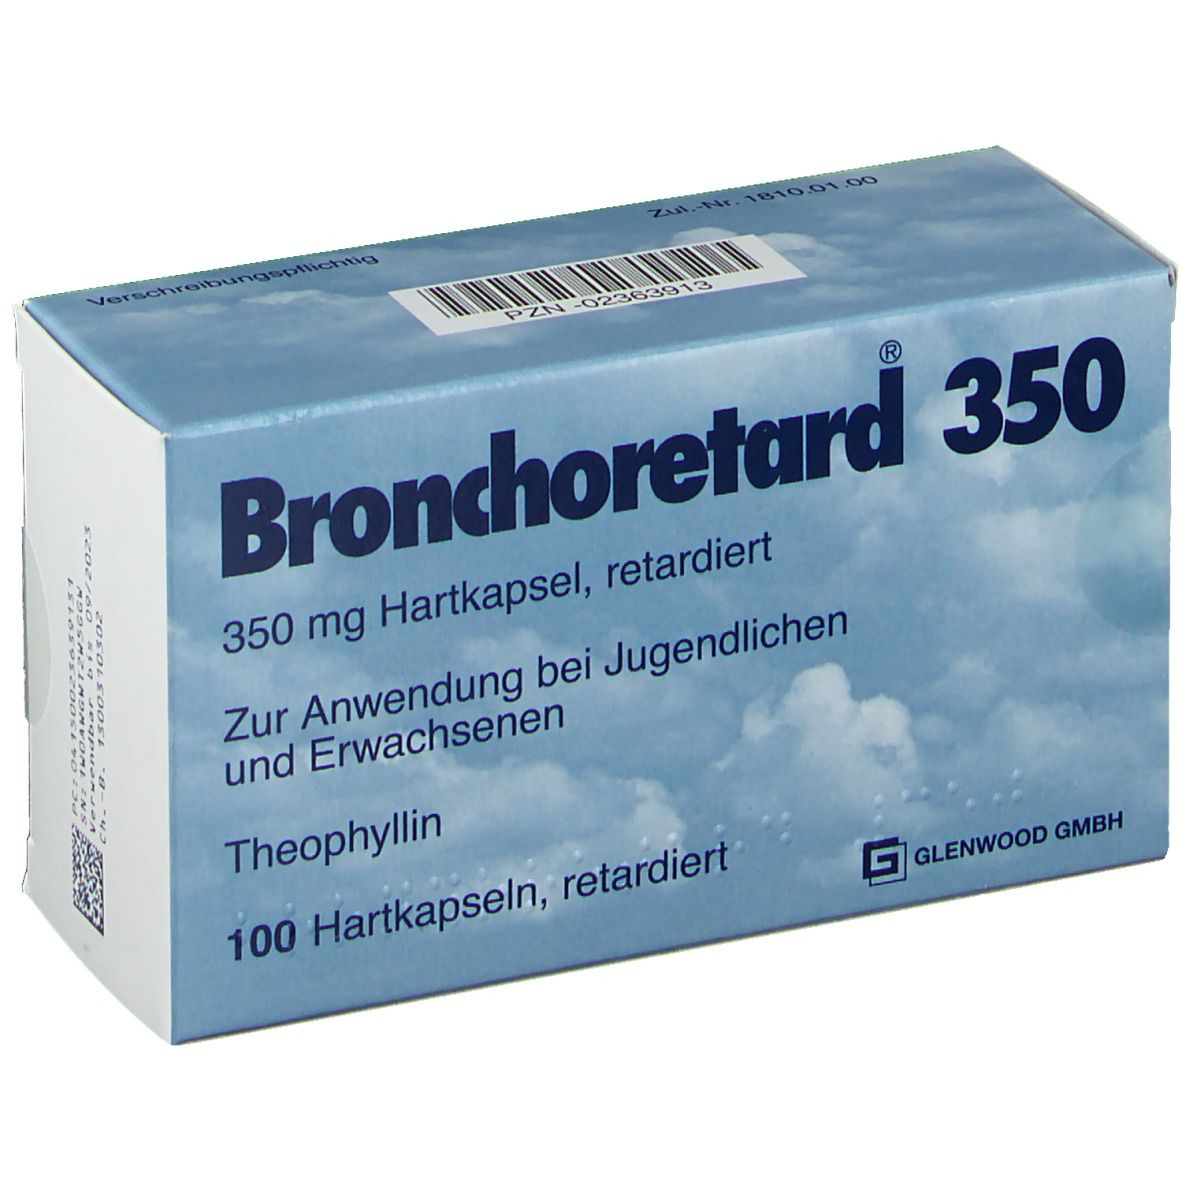 Bronchoretard® 350